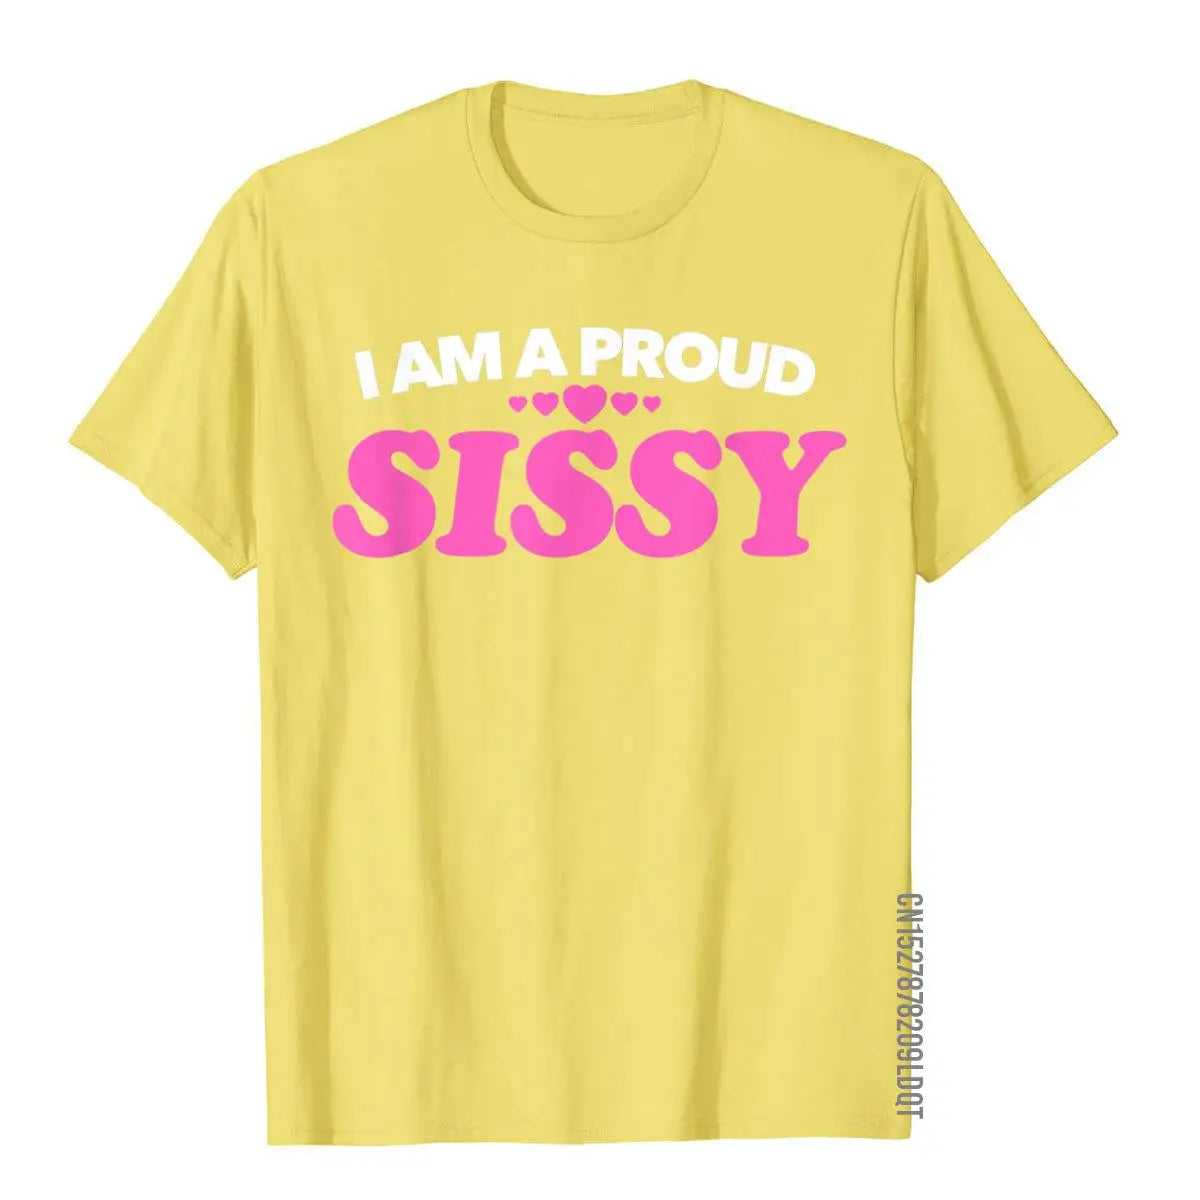 I Am A Proud Sissy T Shirt